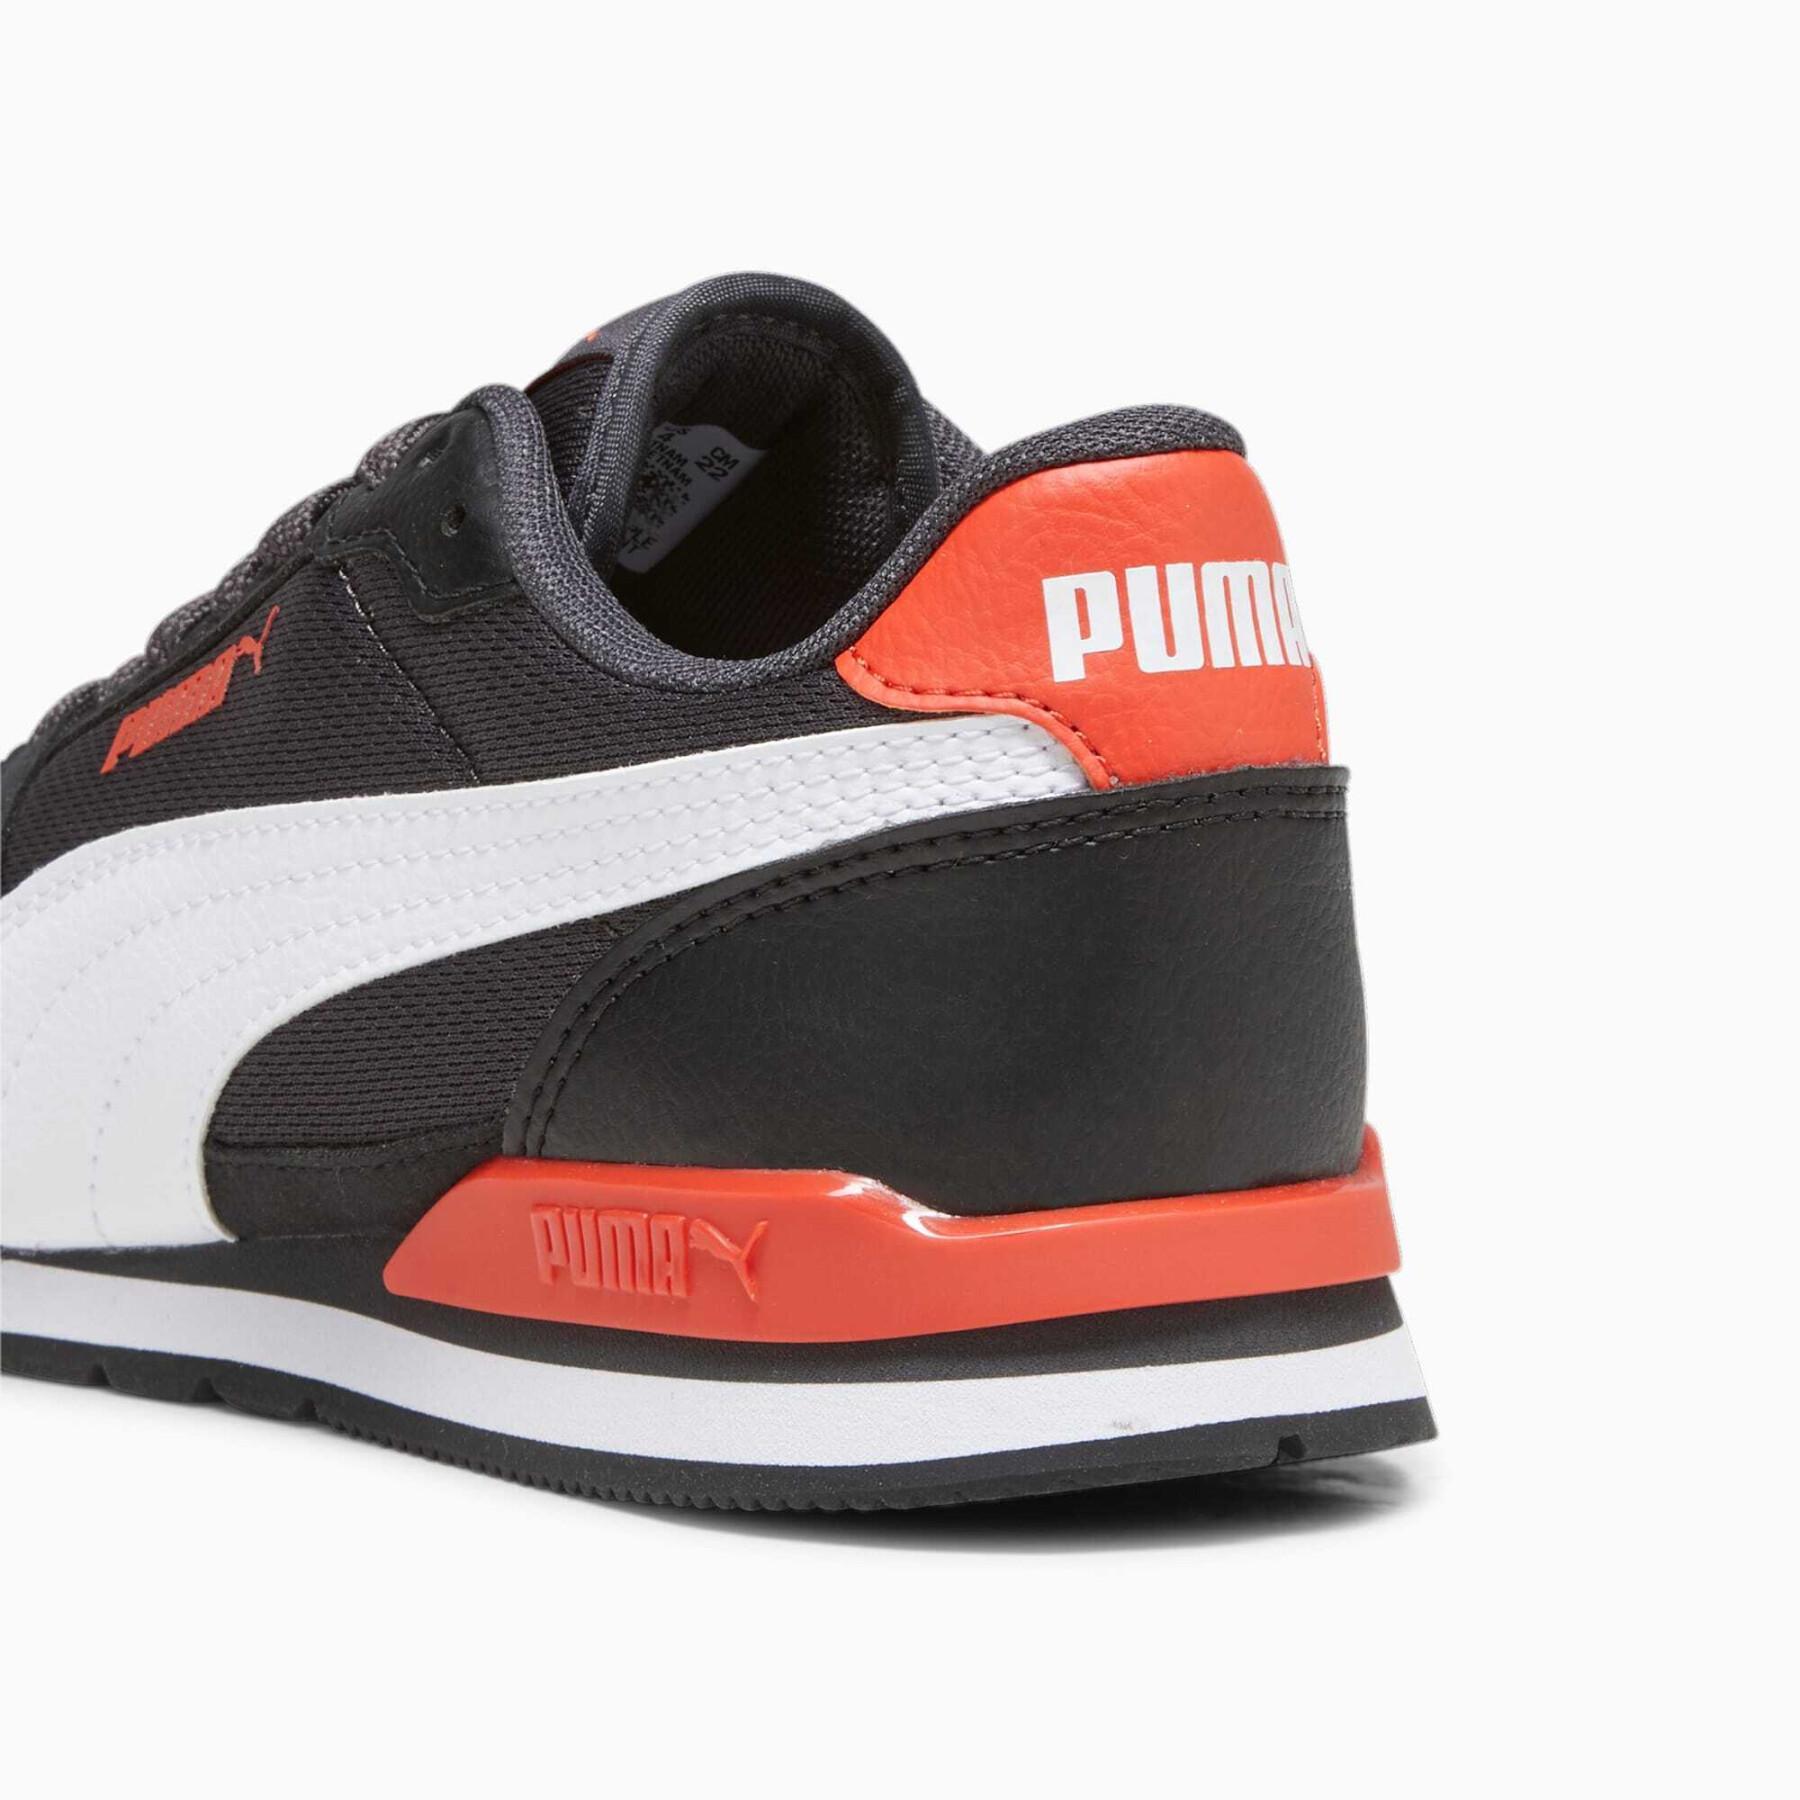 Children's sneakers Puma St Runner V3